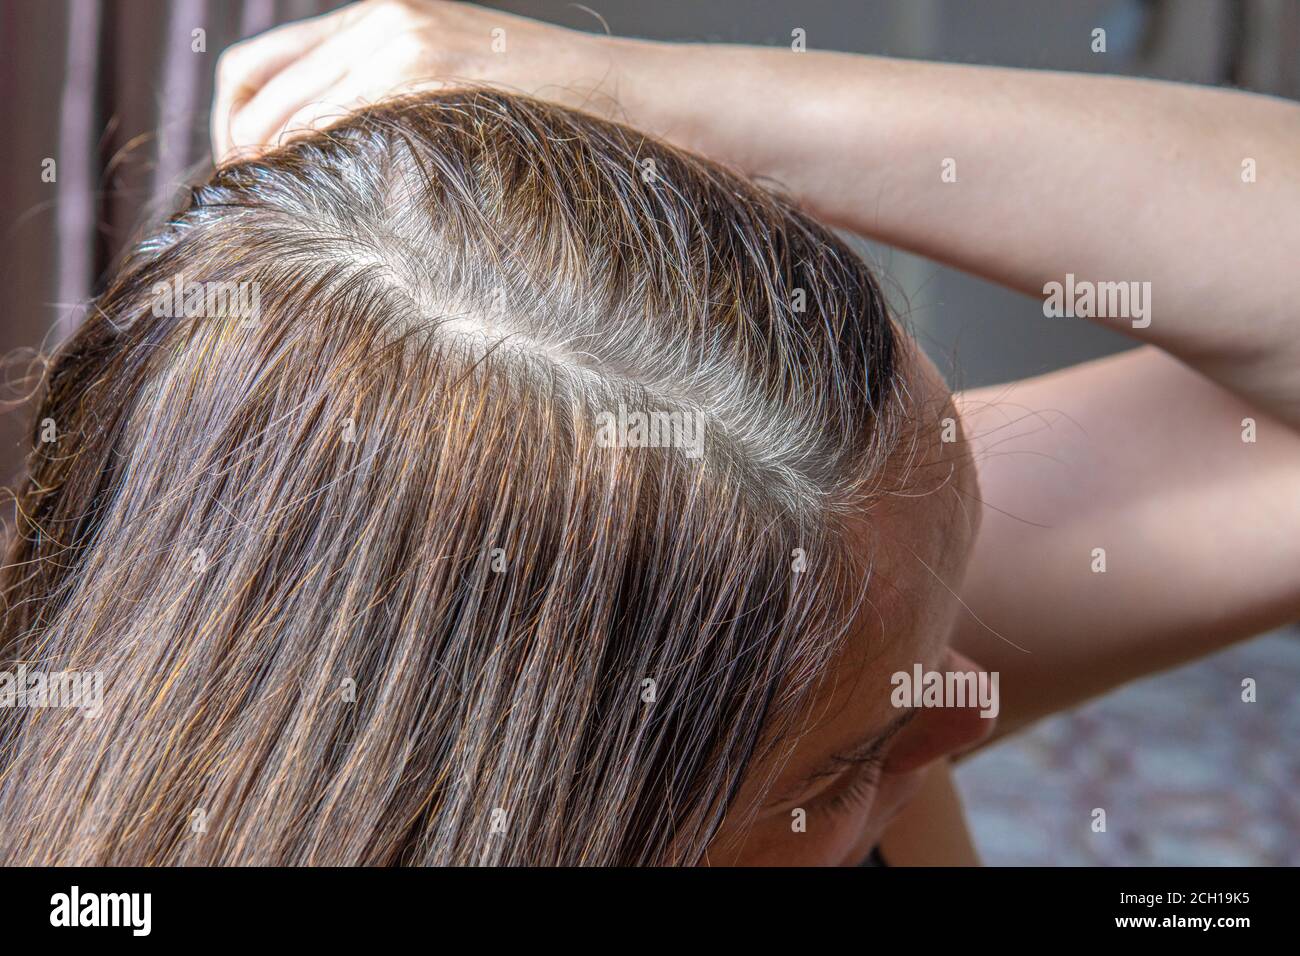 Nahaufnahme des Kopfes einer Frau mit geteilten grauen Haaren wachsen Wurzeln zurück. Frau zeigt ihre grauen Haarwurzeln. Zeit, um Ihre Haare zu färben Stockfoto